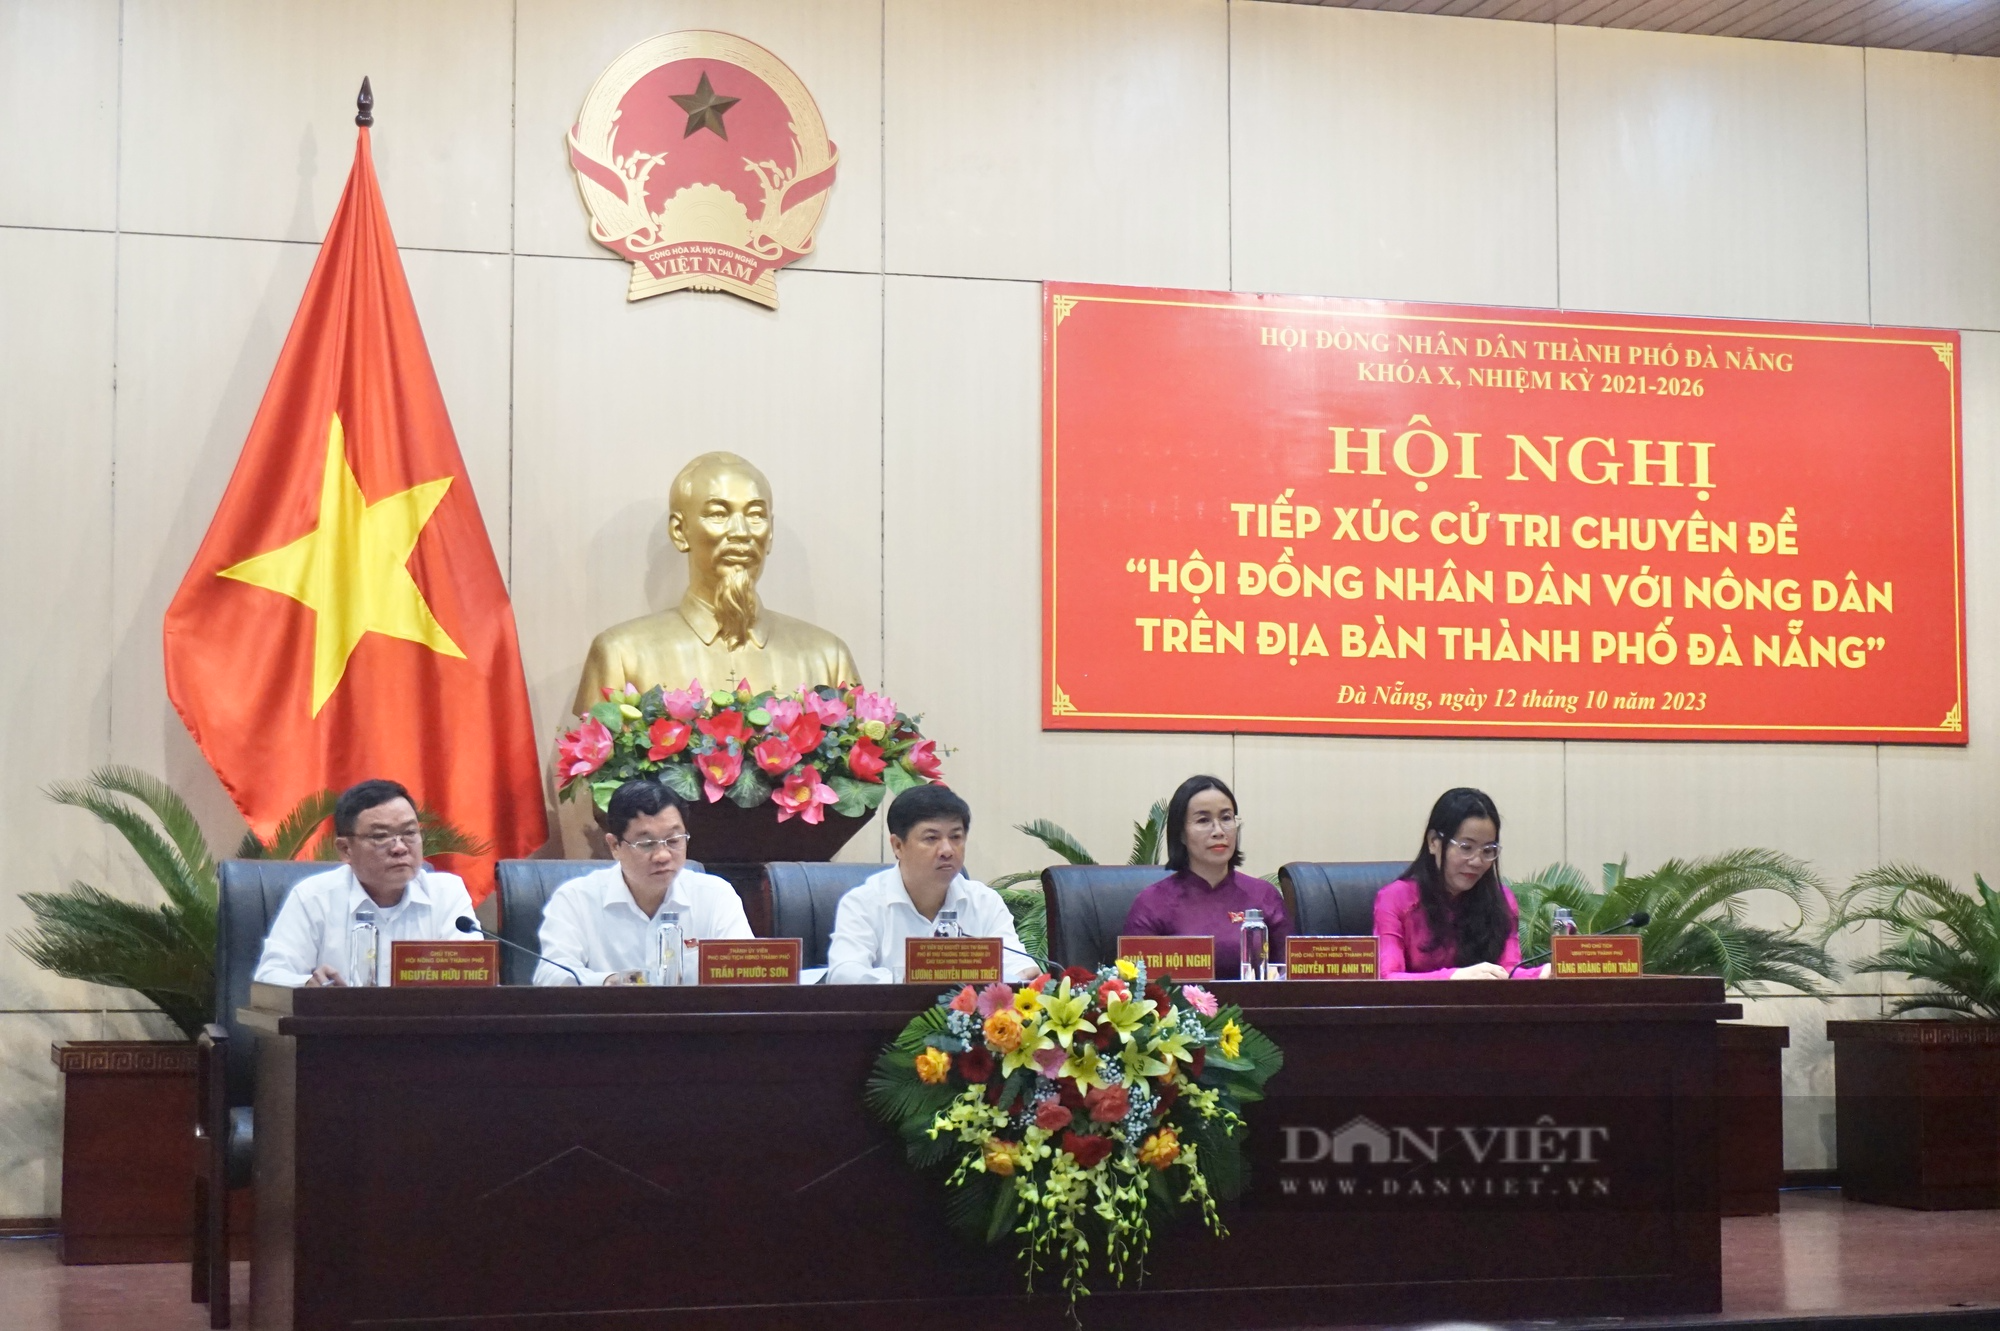 Đà Nẵng: Tiếp xúc cử tri chuyên đề Hội đồng nhân dân với nông dân thành phố - Ảnh 2.